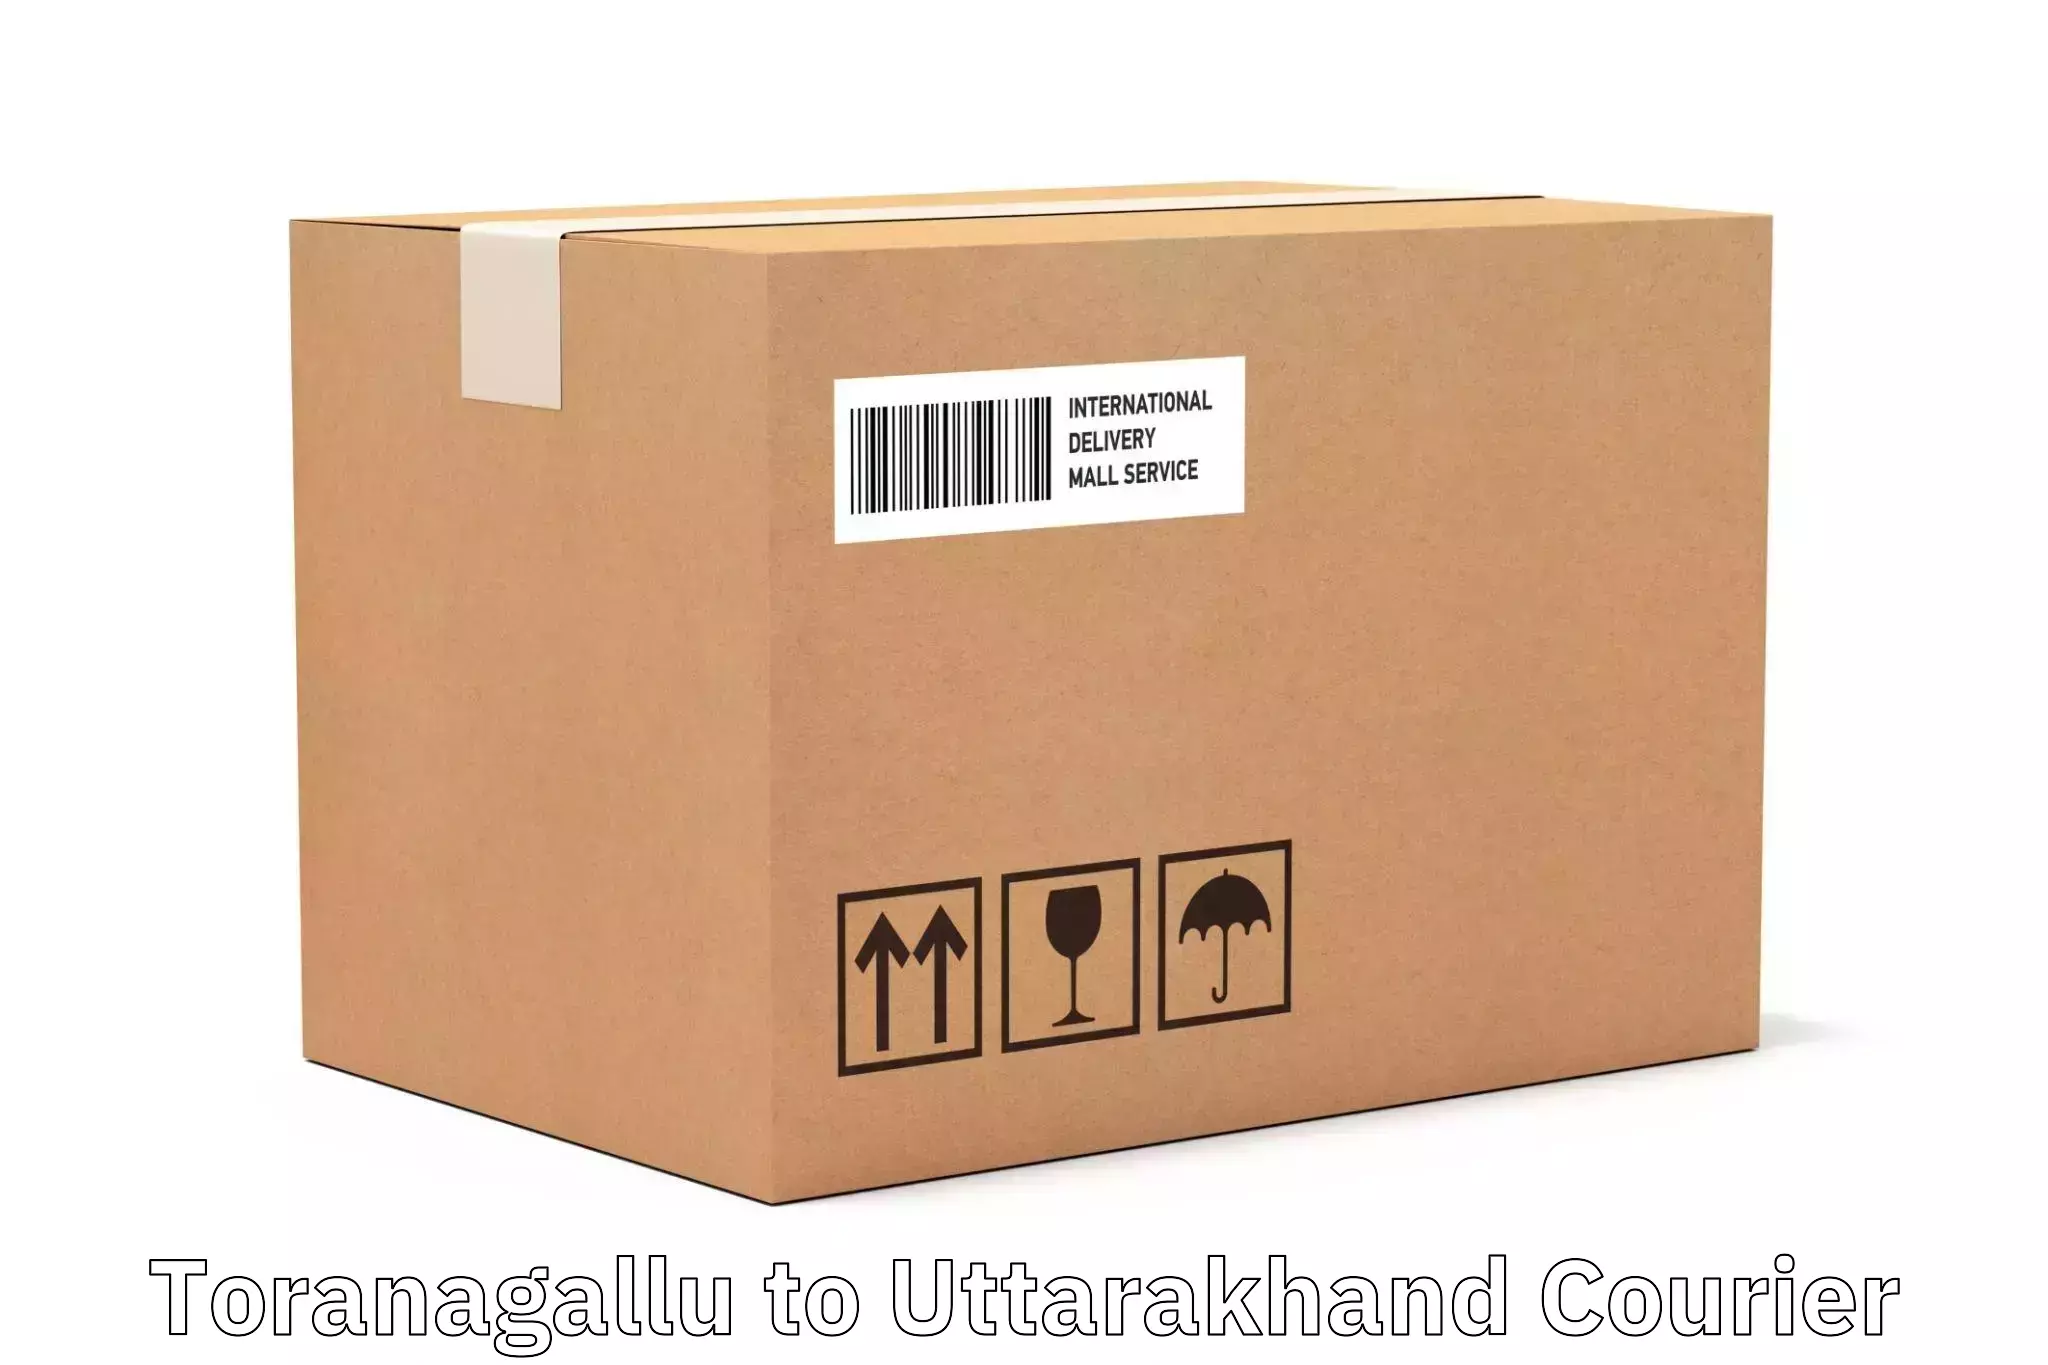 Express logistics providers Toranagallu to Uttarakhand